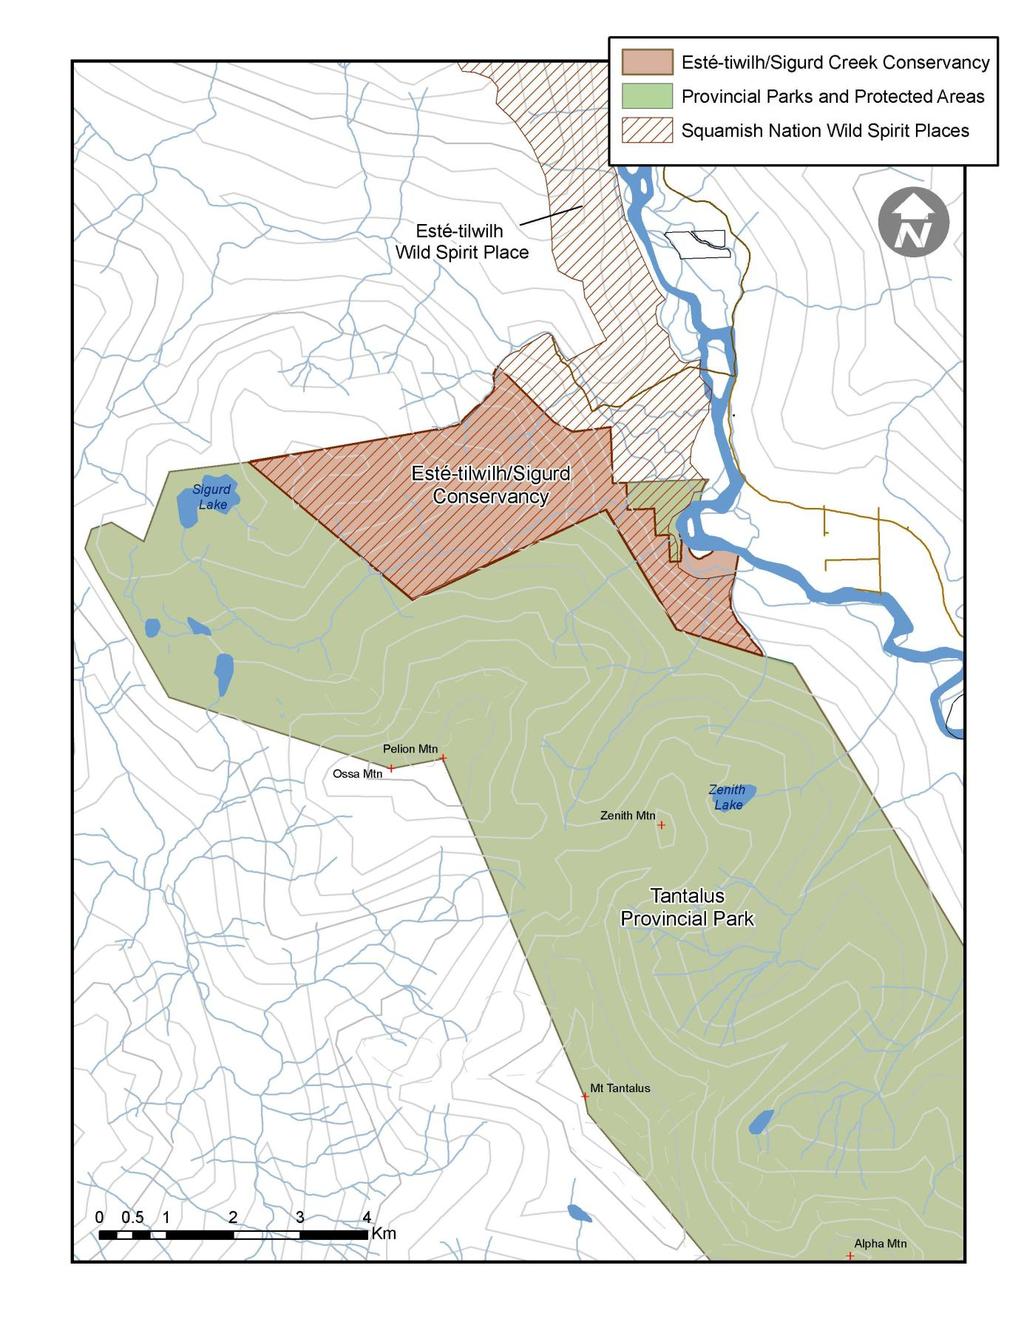 Figure 2: Esté-tiwilh/Sigurd Creek Conservancy Map